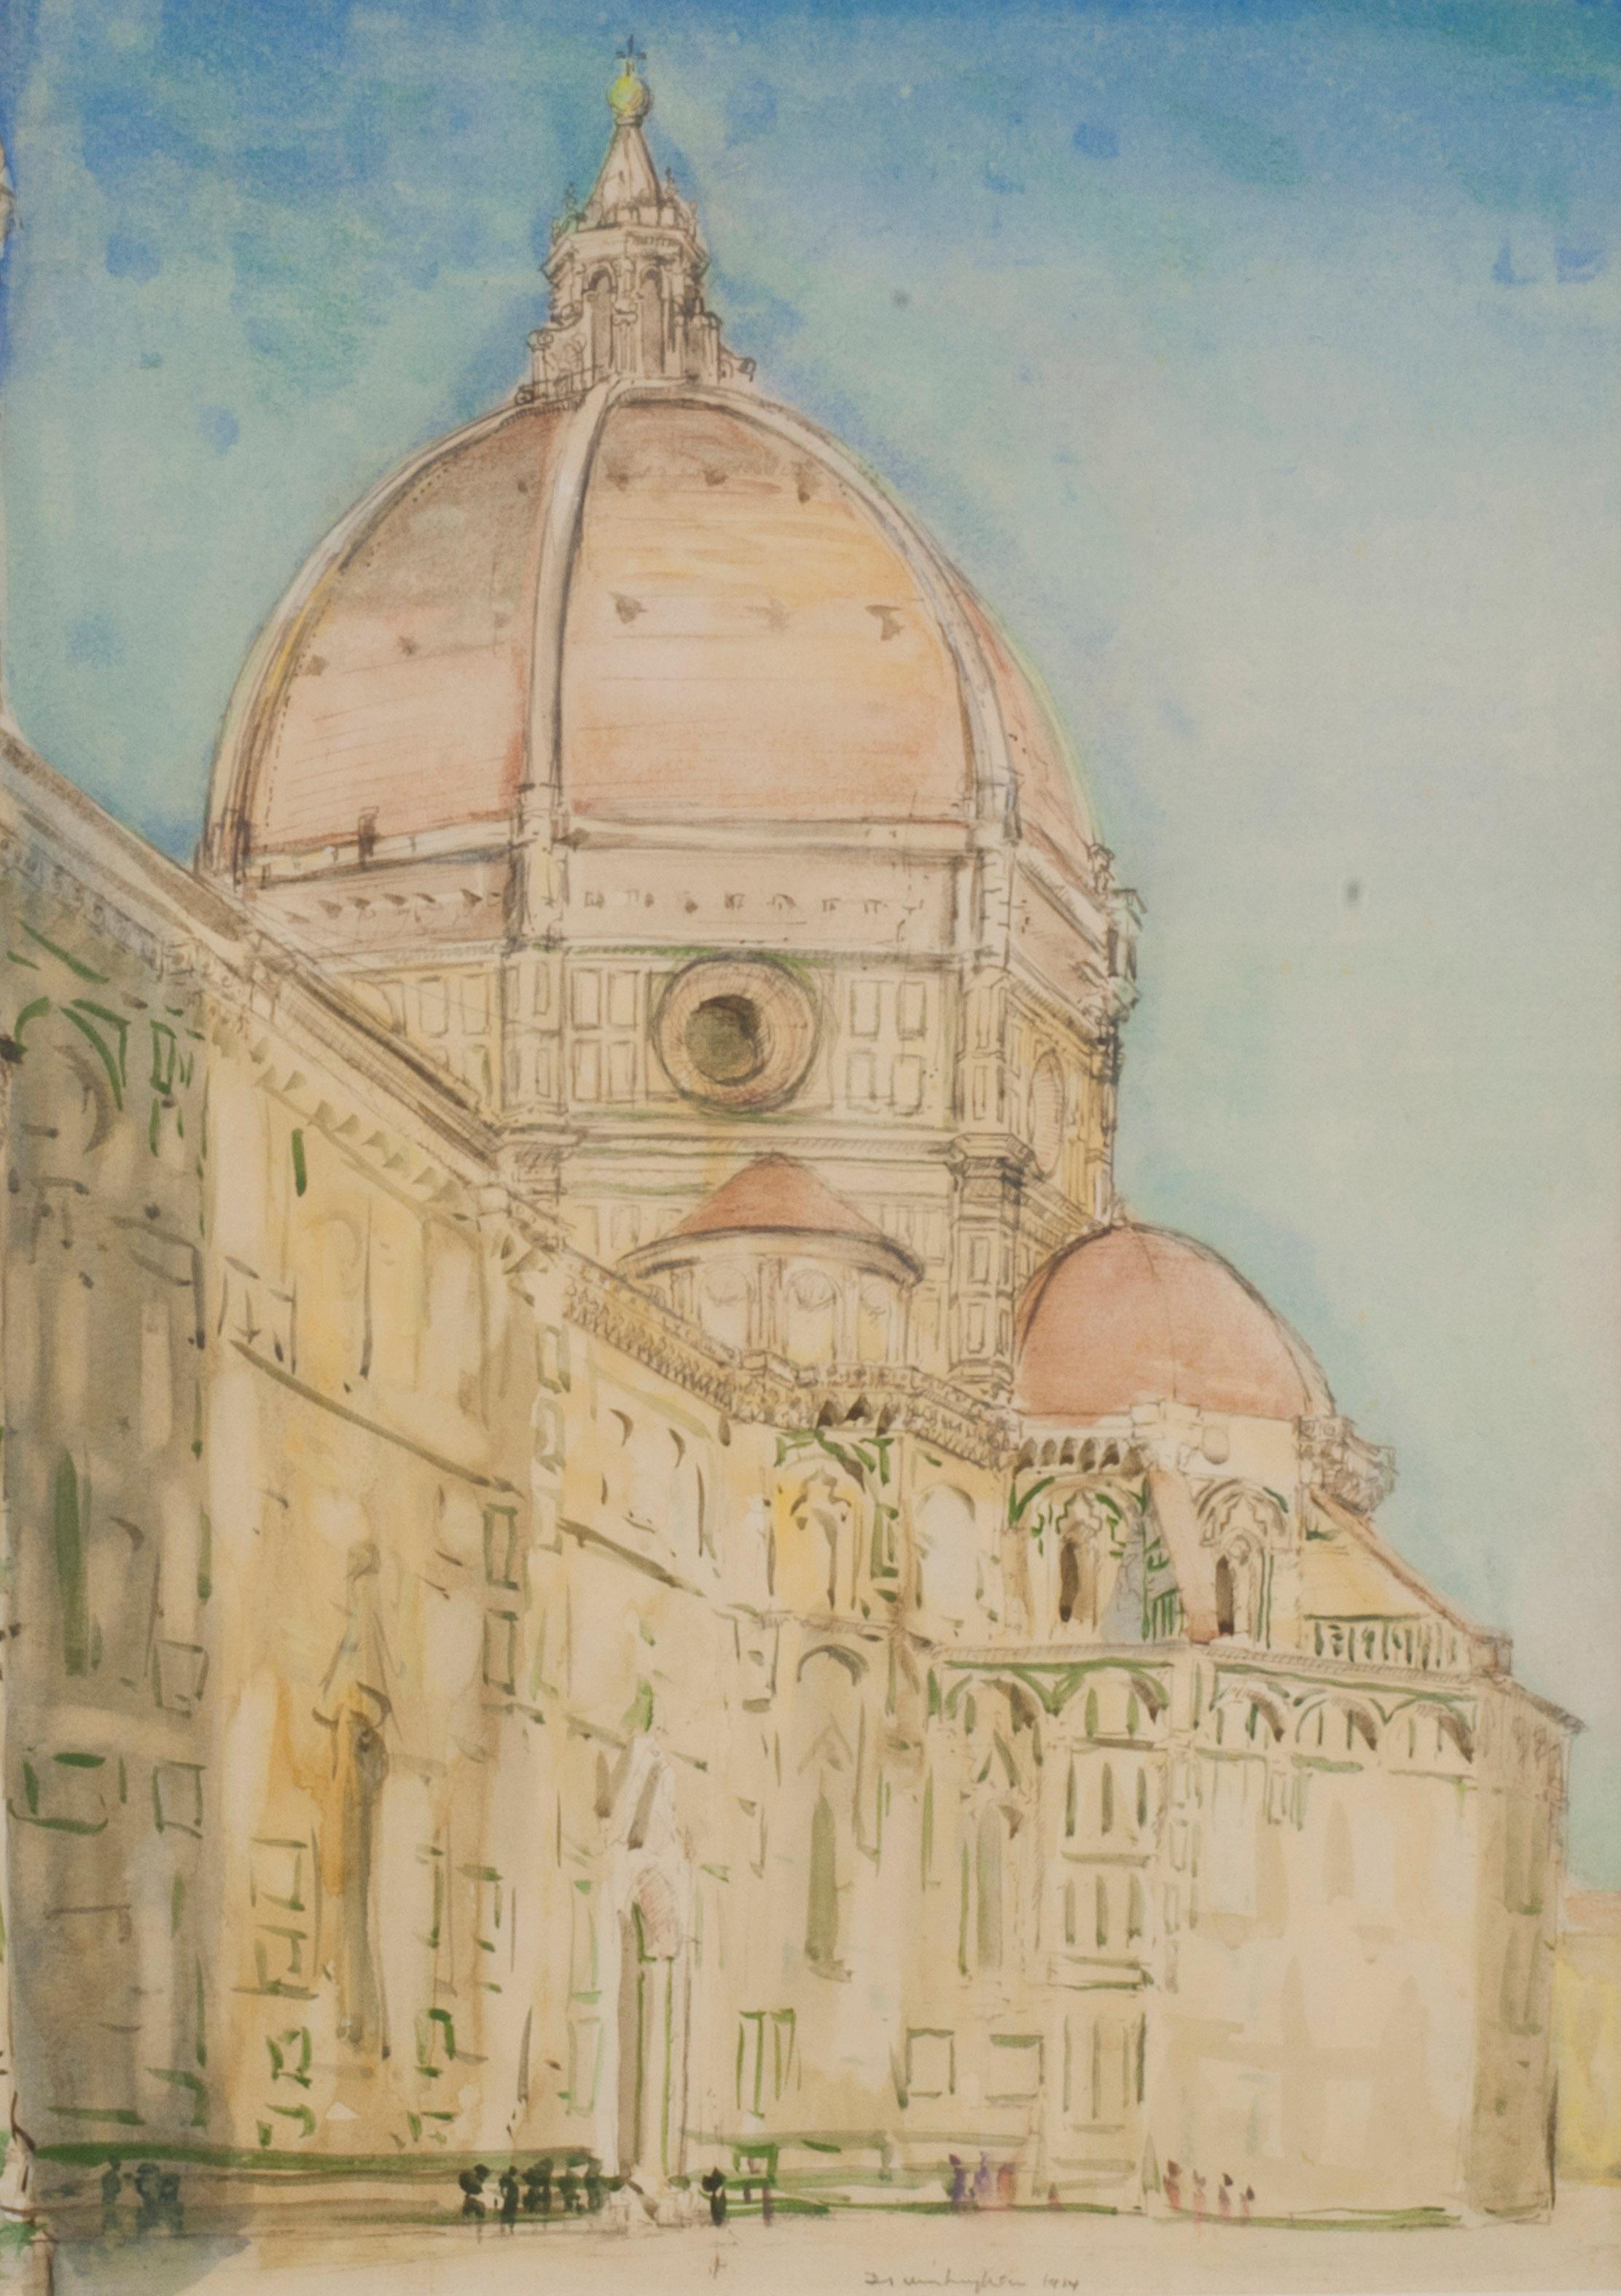 Der Duomo, Florenz
Aquarell, 1914
Signiert und datiert unten in der Mitte (siehe Foto)

Die Kathedrale von Florenz, offiziell die Cattedrale di Santa Maria del Fiore, ist die Kathedrale von Florenz, Italien. Sie wurde 1296 nach einem Entwurf von